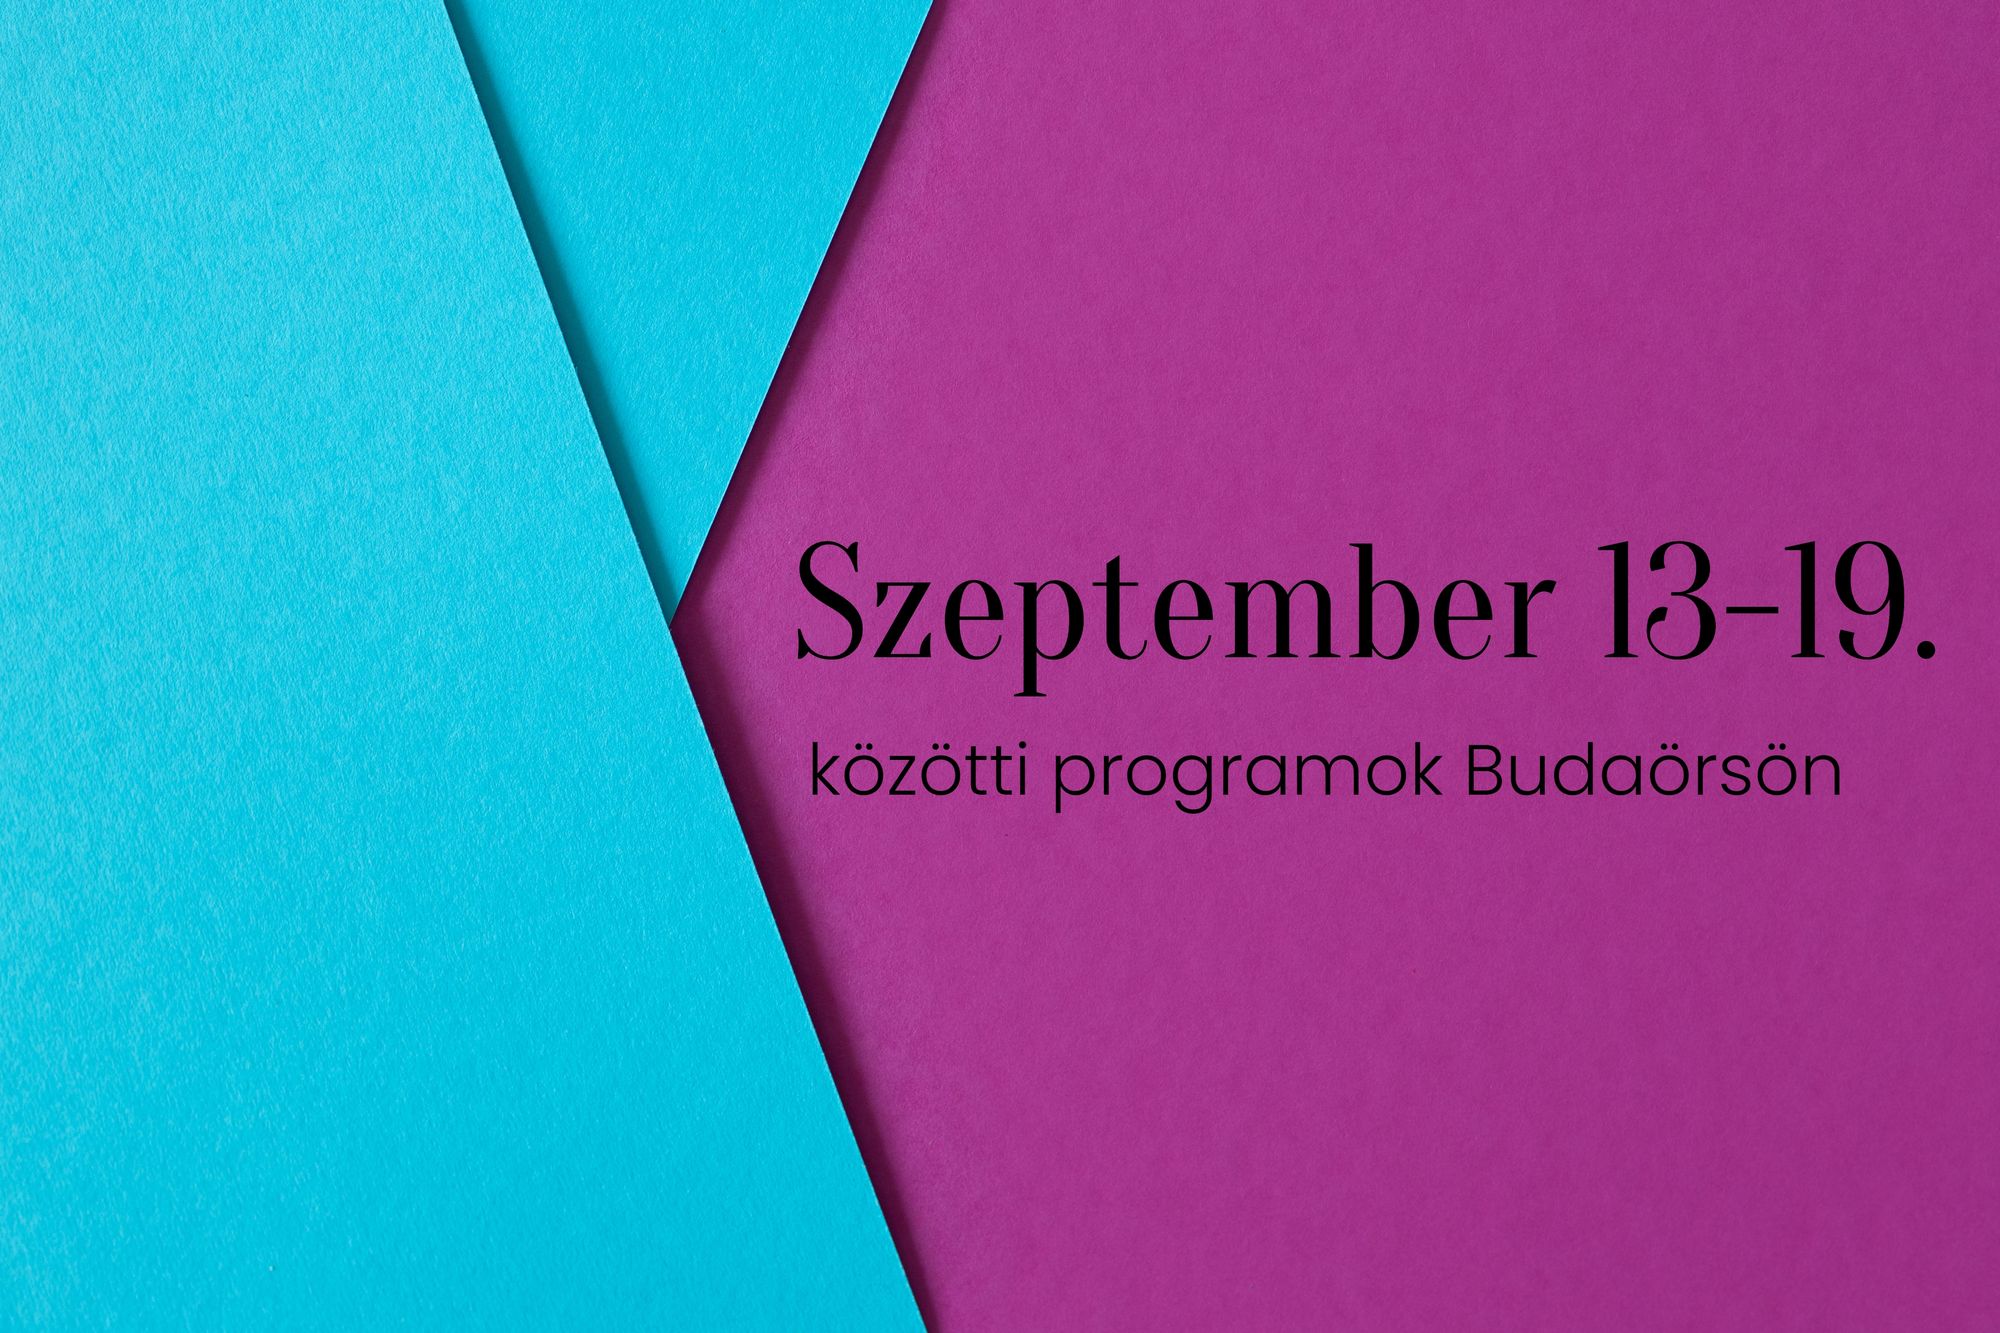 Szeptember 13-19. közötti programok